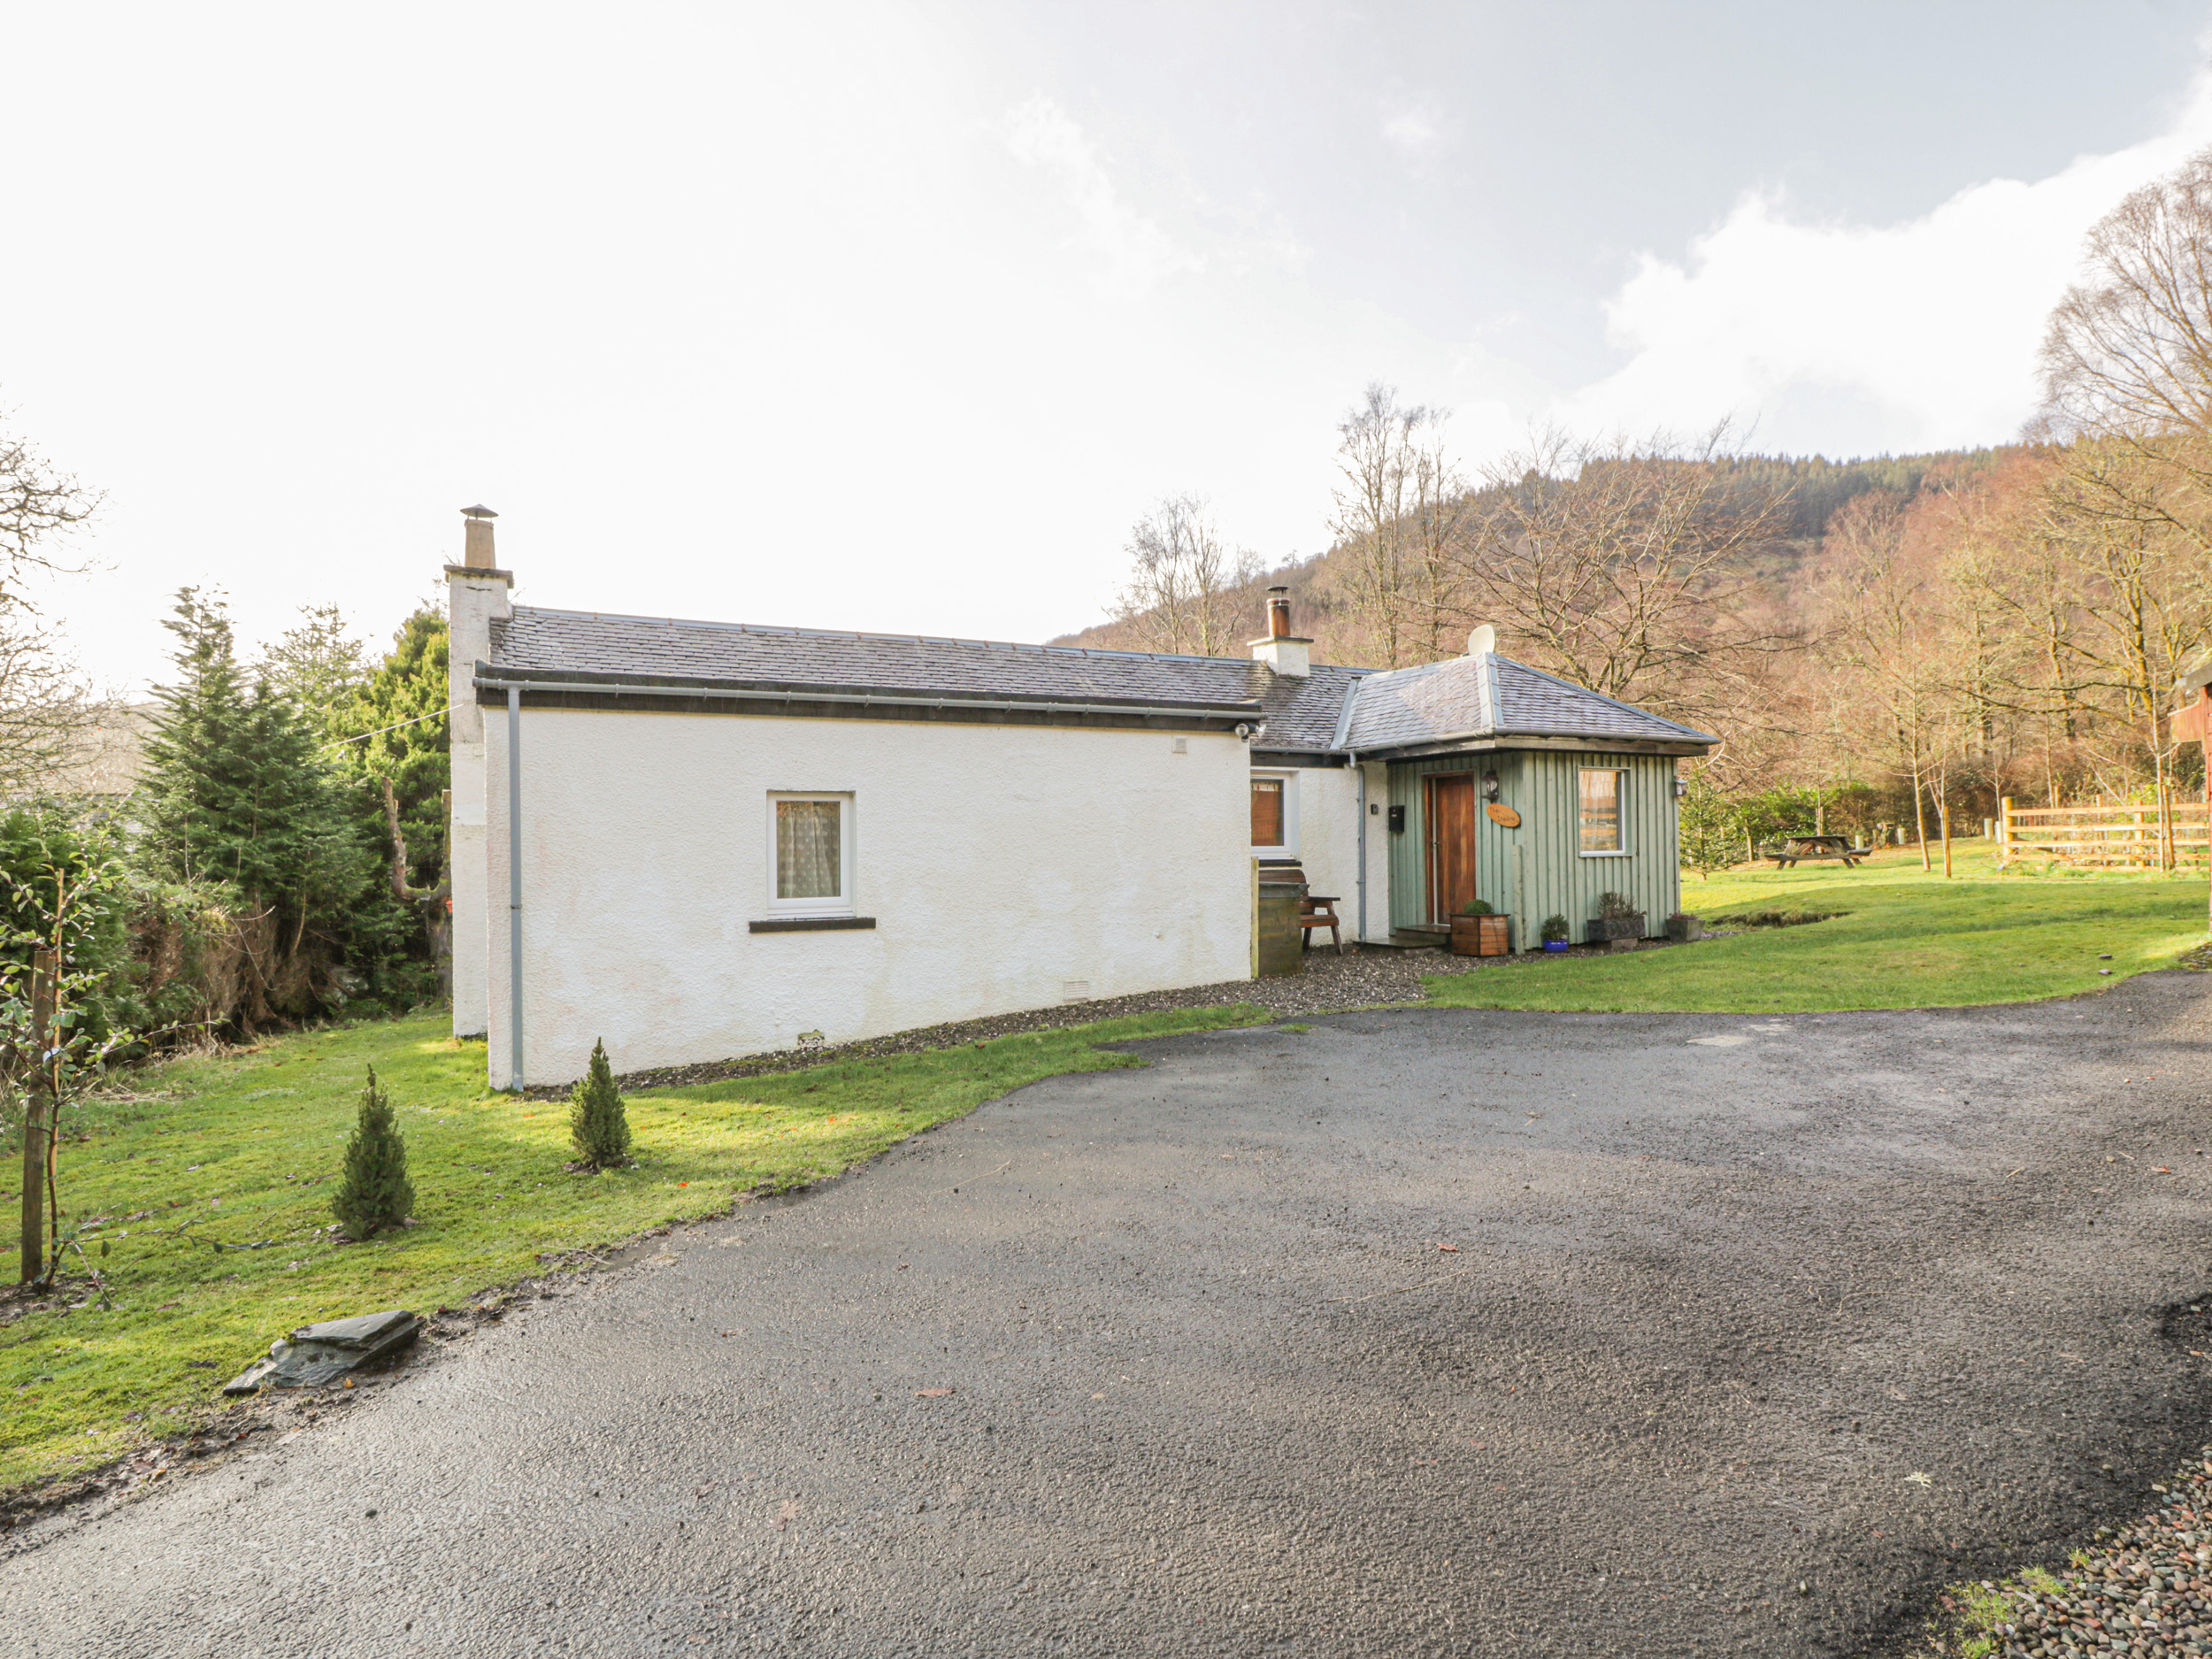 2 bedroom Cottage for rent in Loch Lomond National Park